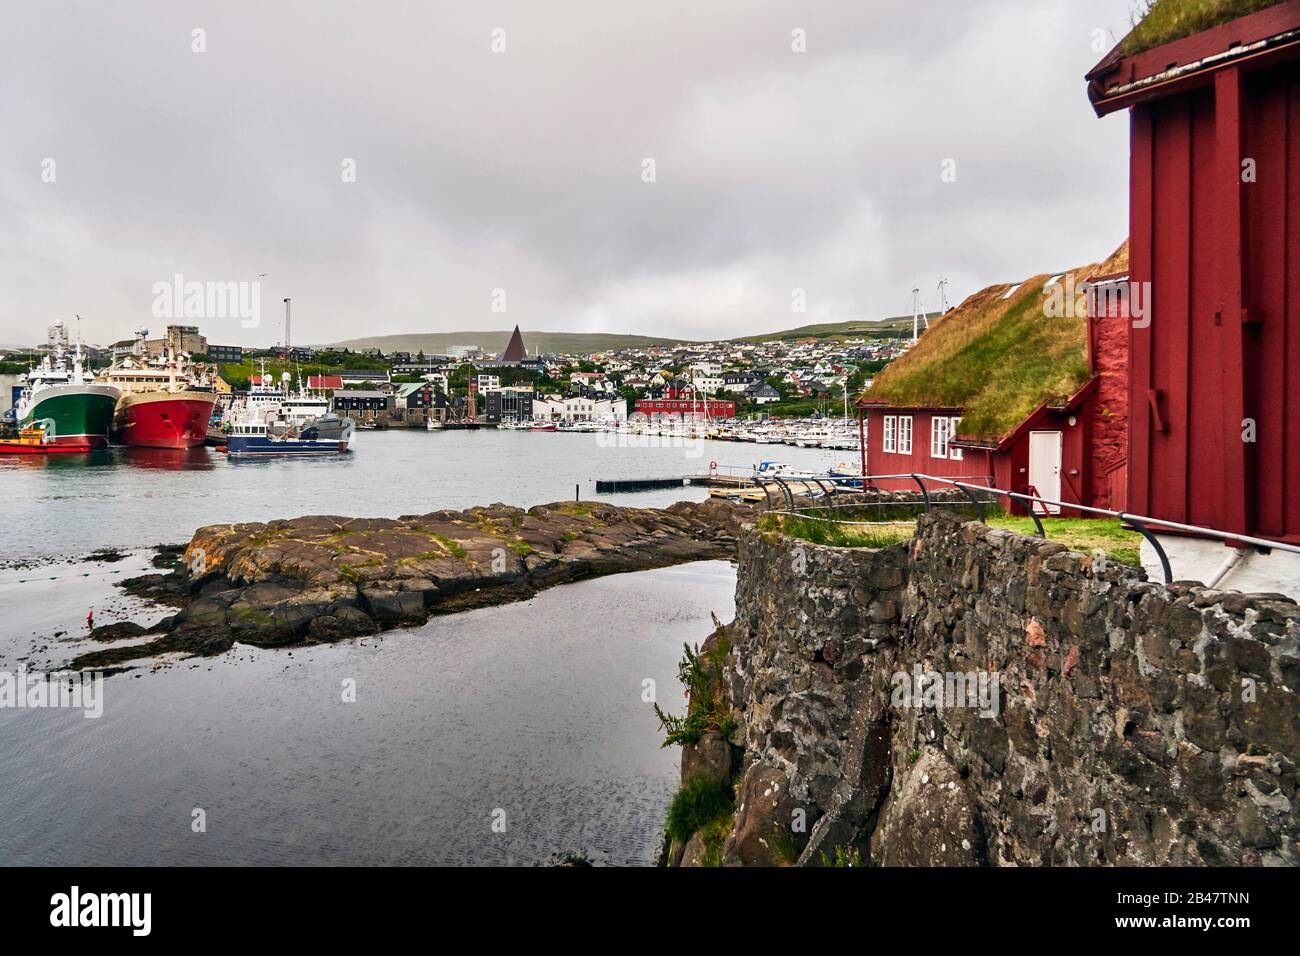 Danemark, Torshavn. 12 juillet 2018. Tórshavn, la capitale et la plus grande ville des îles Féroé, est située dans la partie sud de la côte est de Streymoy. Tinganes est l'emplacement historique et la partie centrale de Tórshavn. De nombreuses maisons en bois de Tinganes ont été construites aux XVIe et XVIIe siècles et ont la couleur rouge typique ainsi que le toit en herbe, ce qui est très commun sur les îles Féroé. Banque D'Images